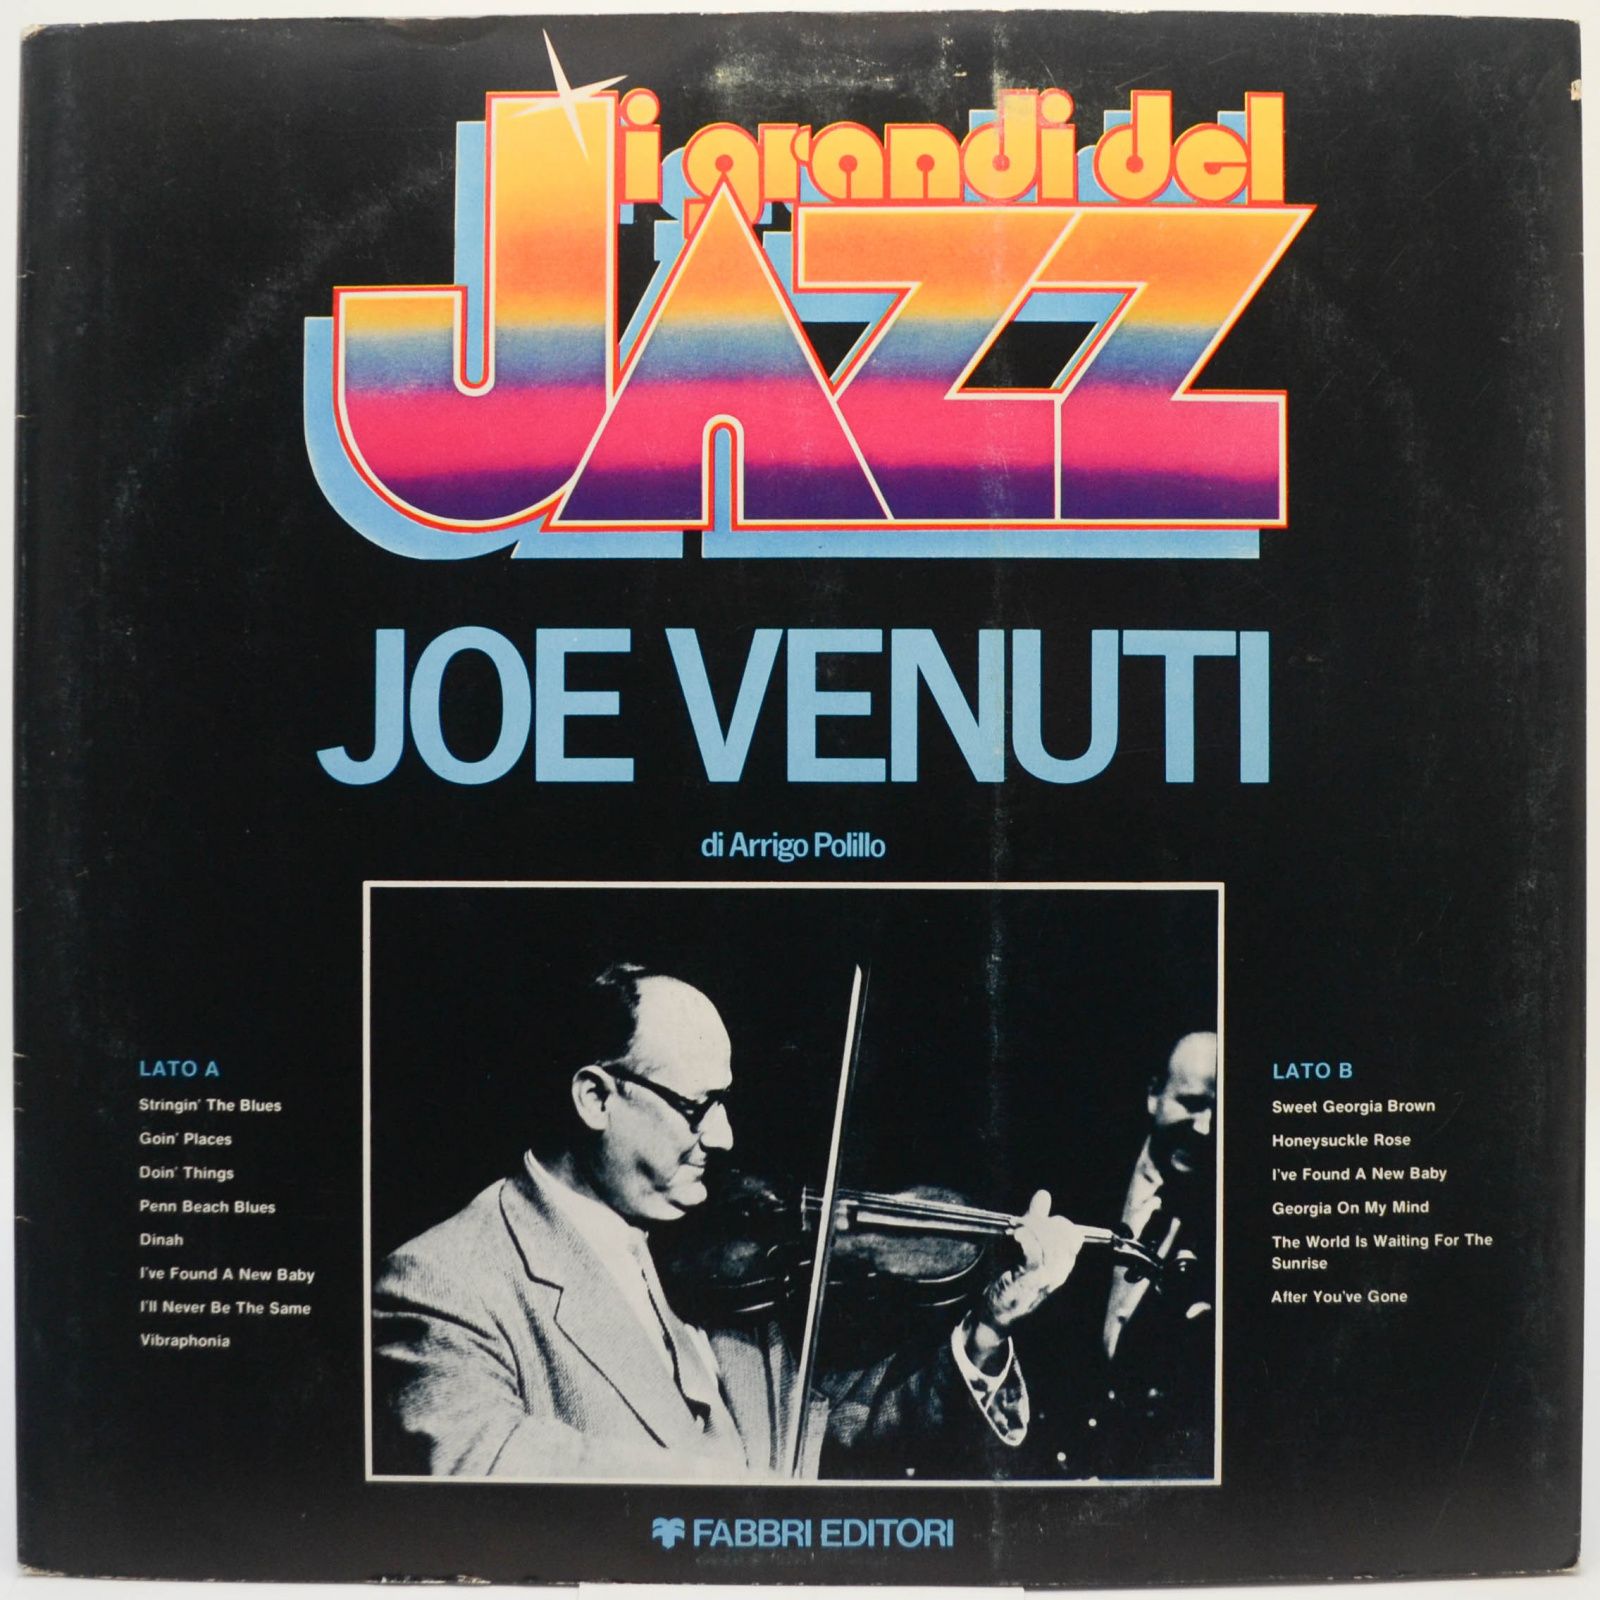 Joe Venuti, 1981